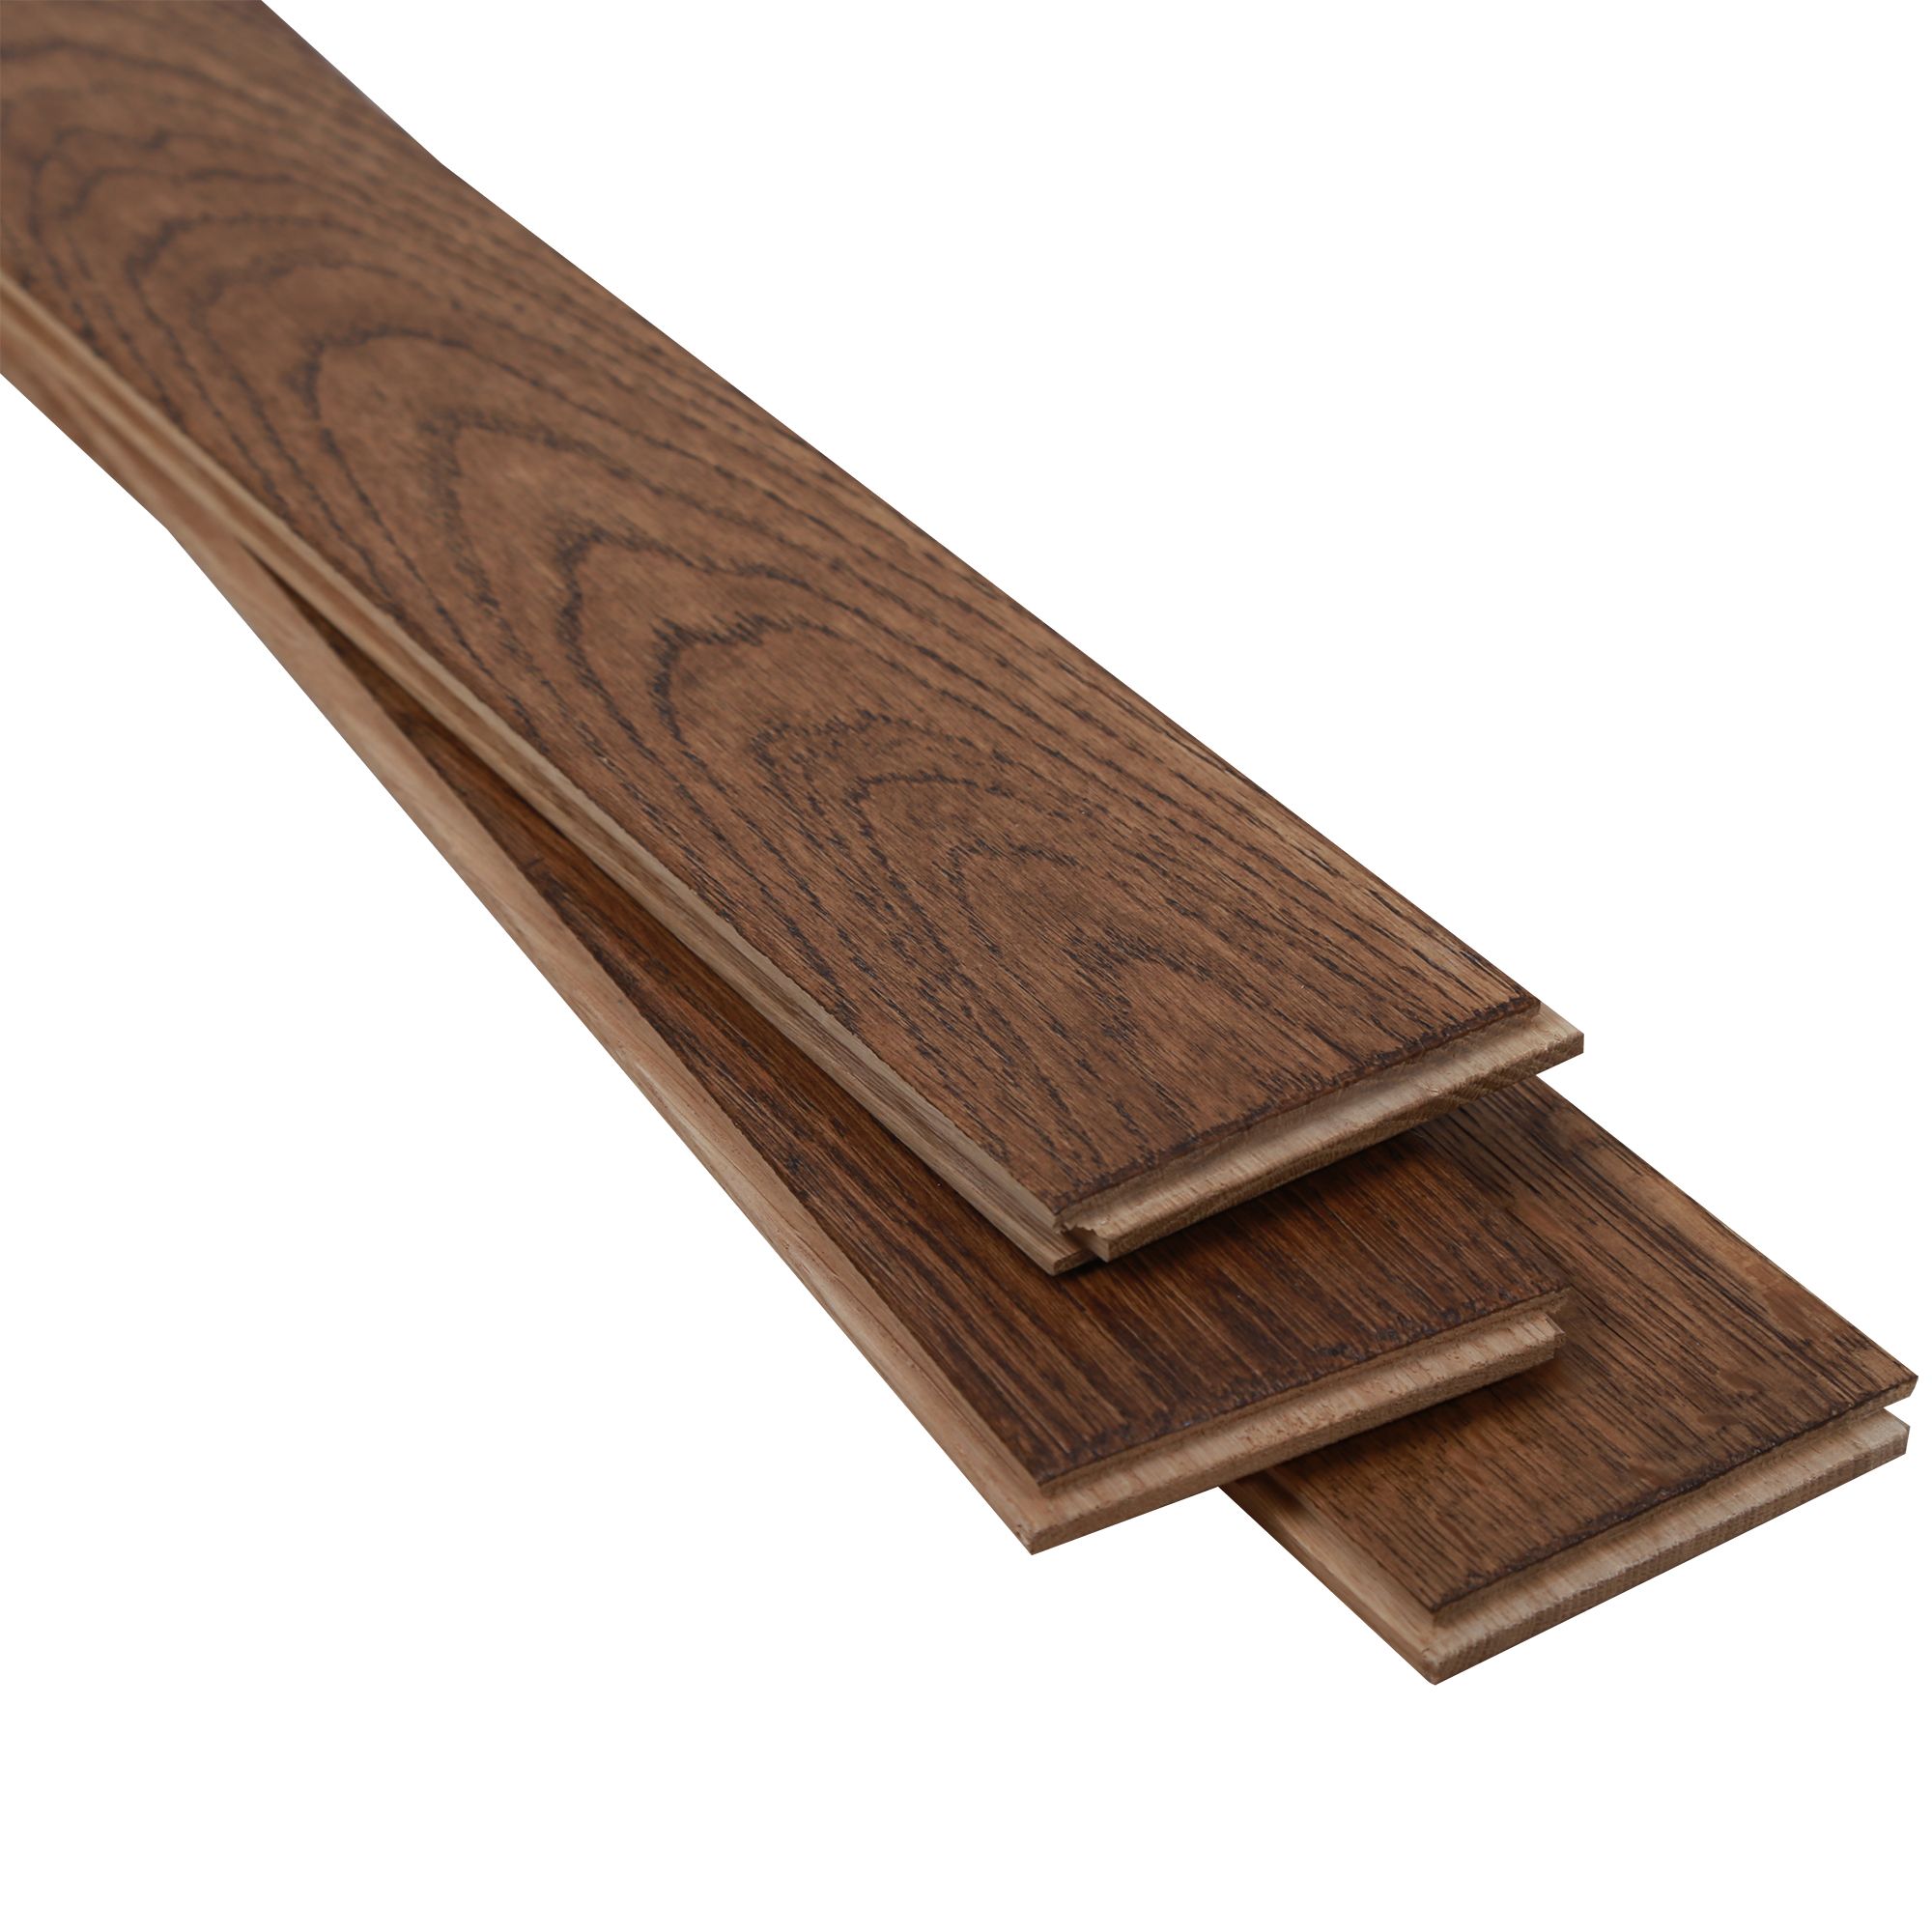 GoodHome Skanor Herringbone Dark Brown Oak Solid wood flooring, 1.94m² Pack of 36